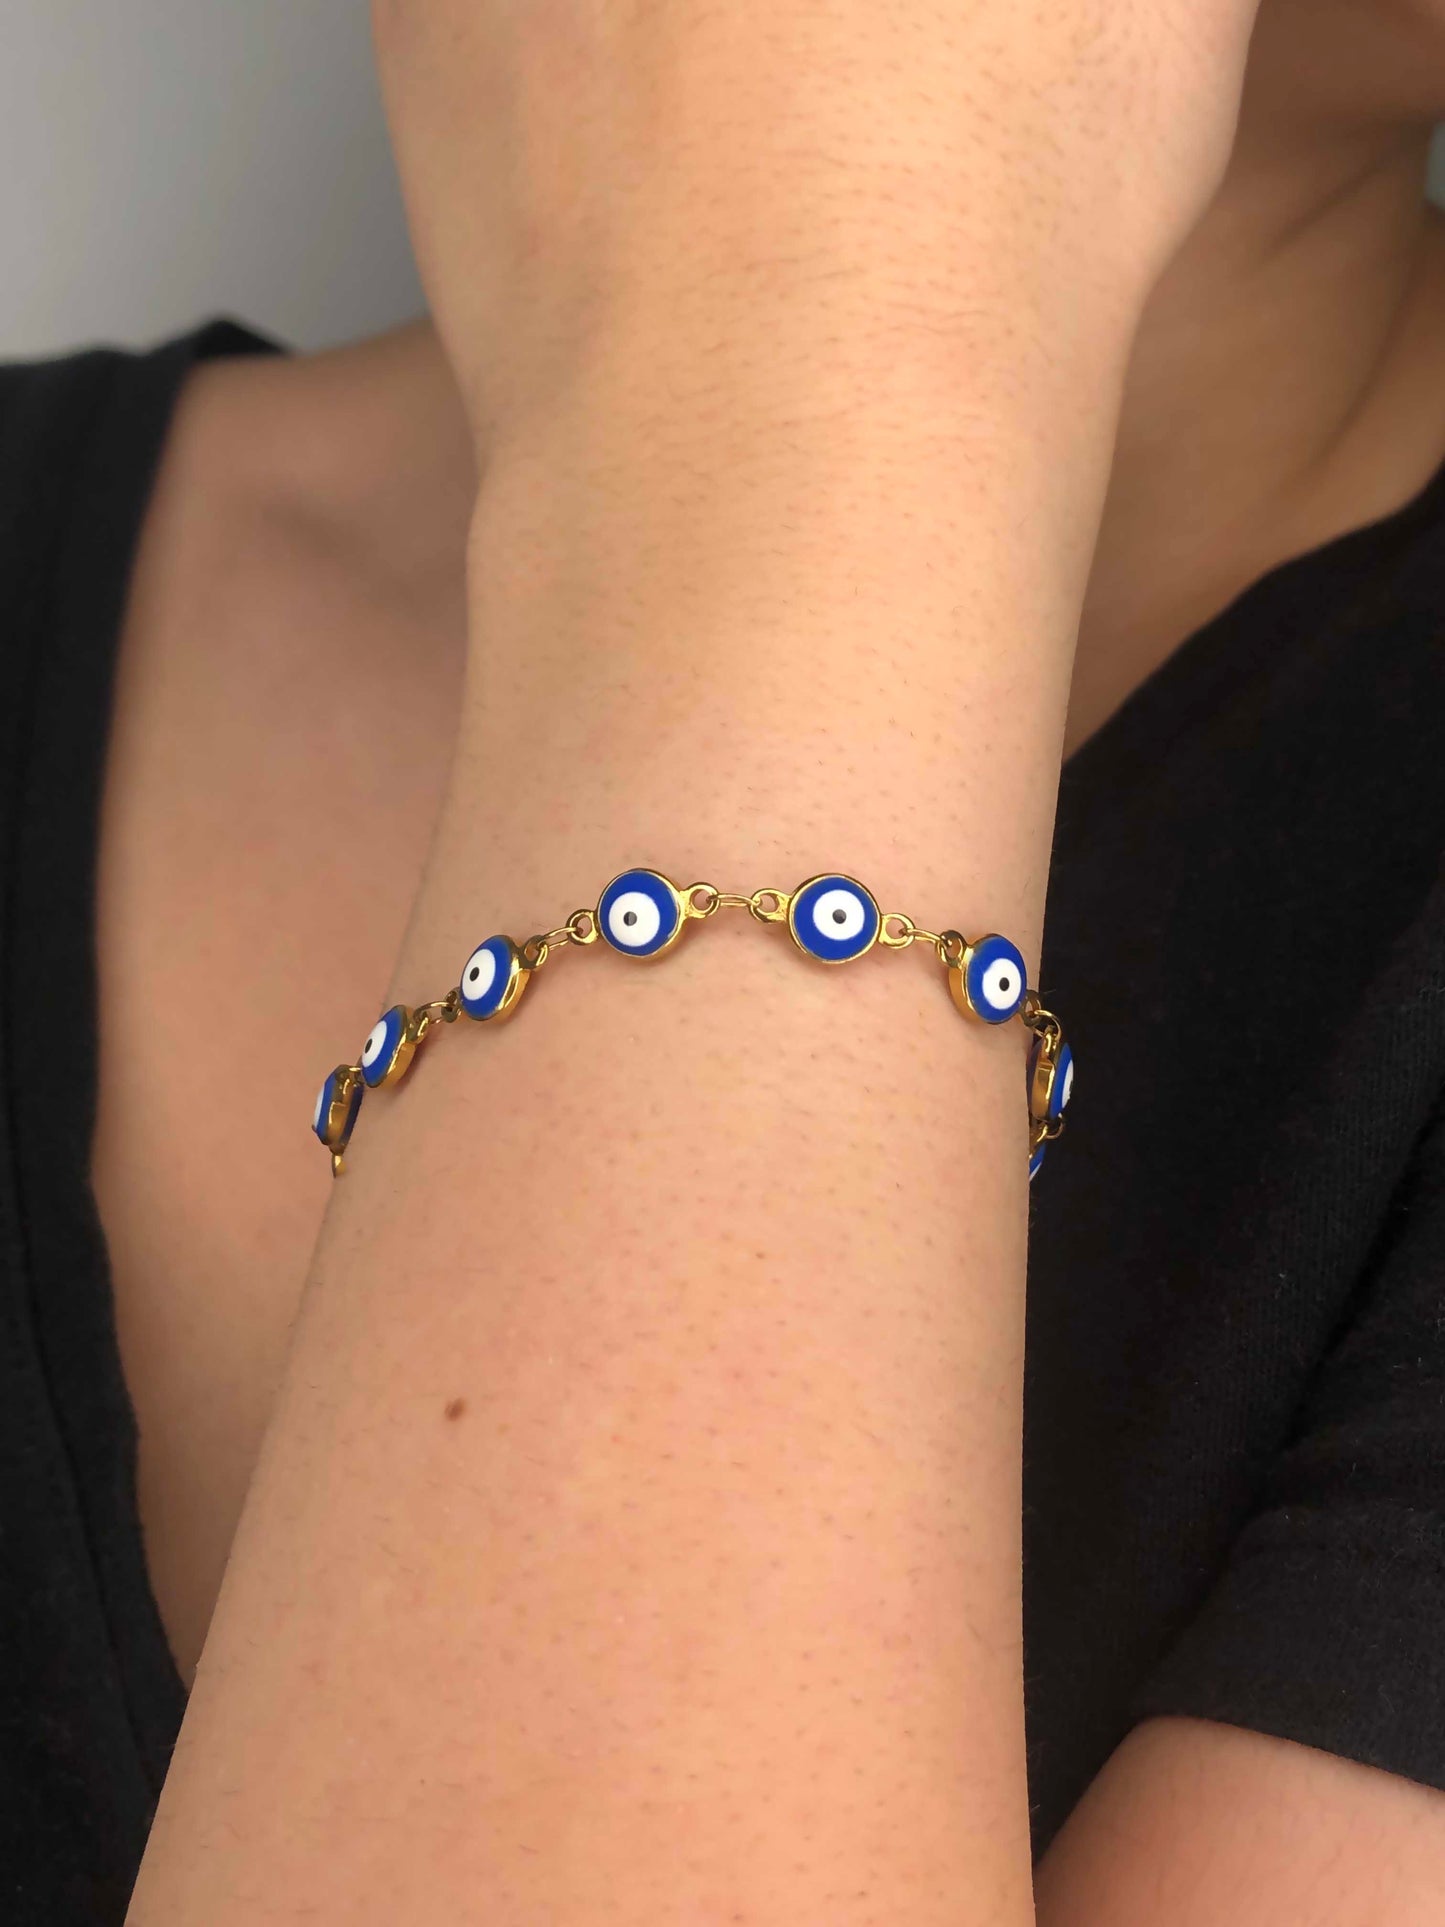 Handmade golden blue evil eye charm chain bracelet.